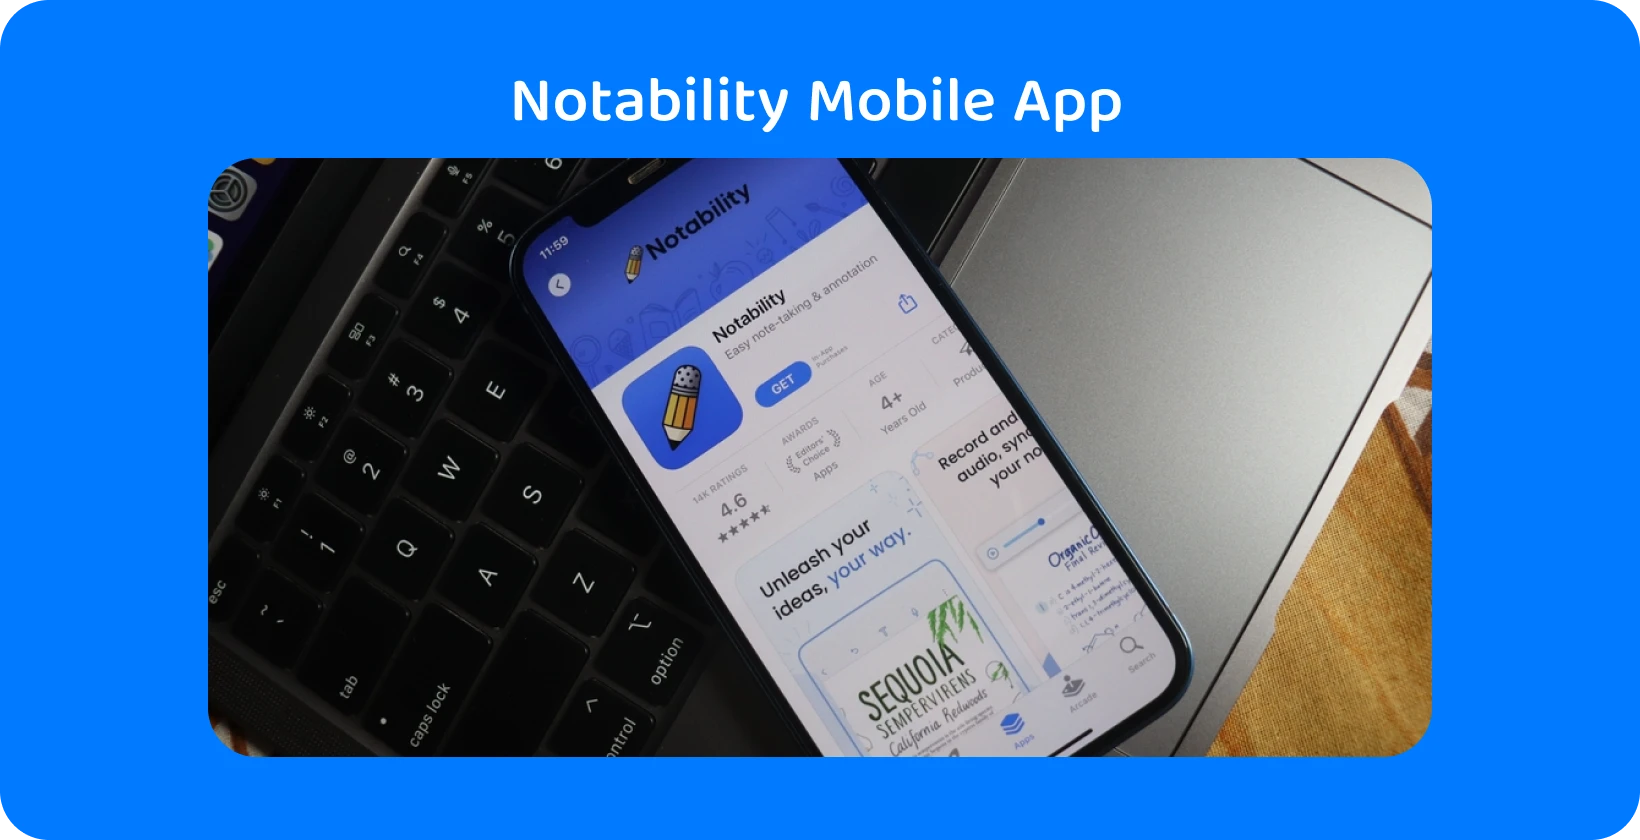 Notability App auf dem Smartphone-Bildschirm mit Transkriptionsfunktion, die Audio-zu-Text-Funktionen zeigt.